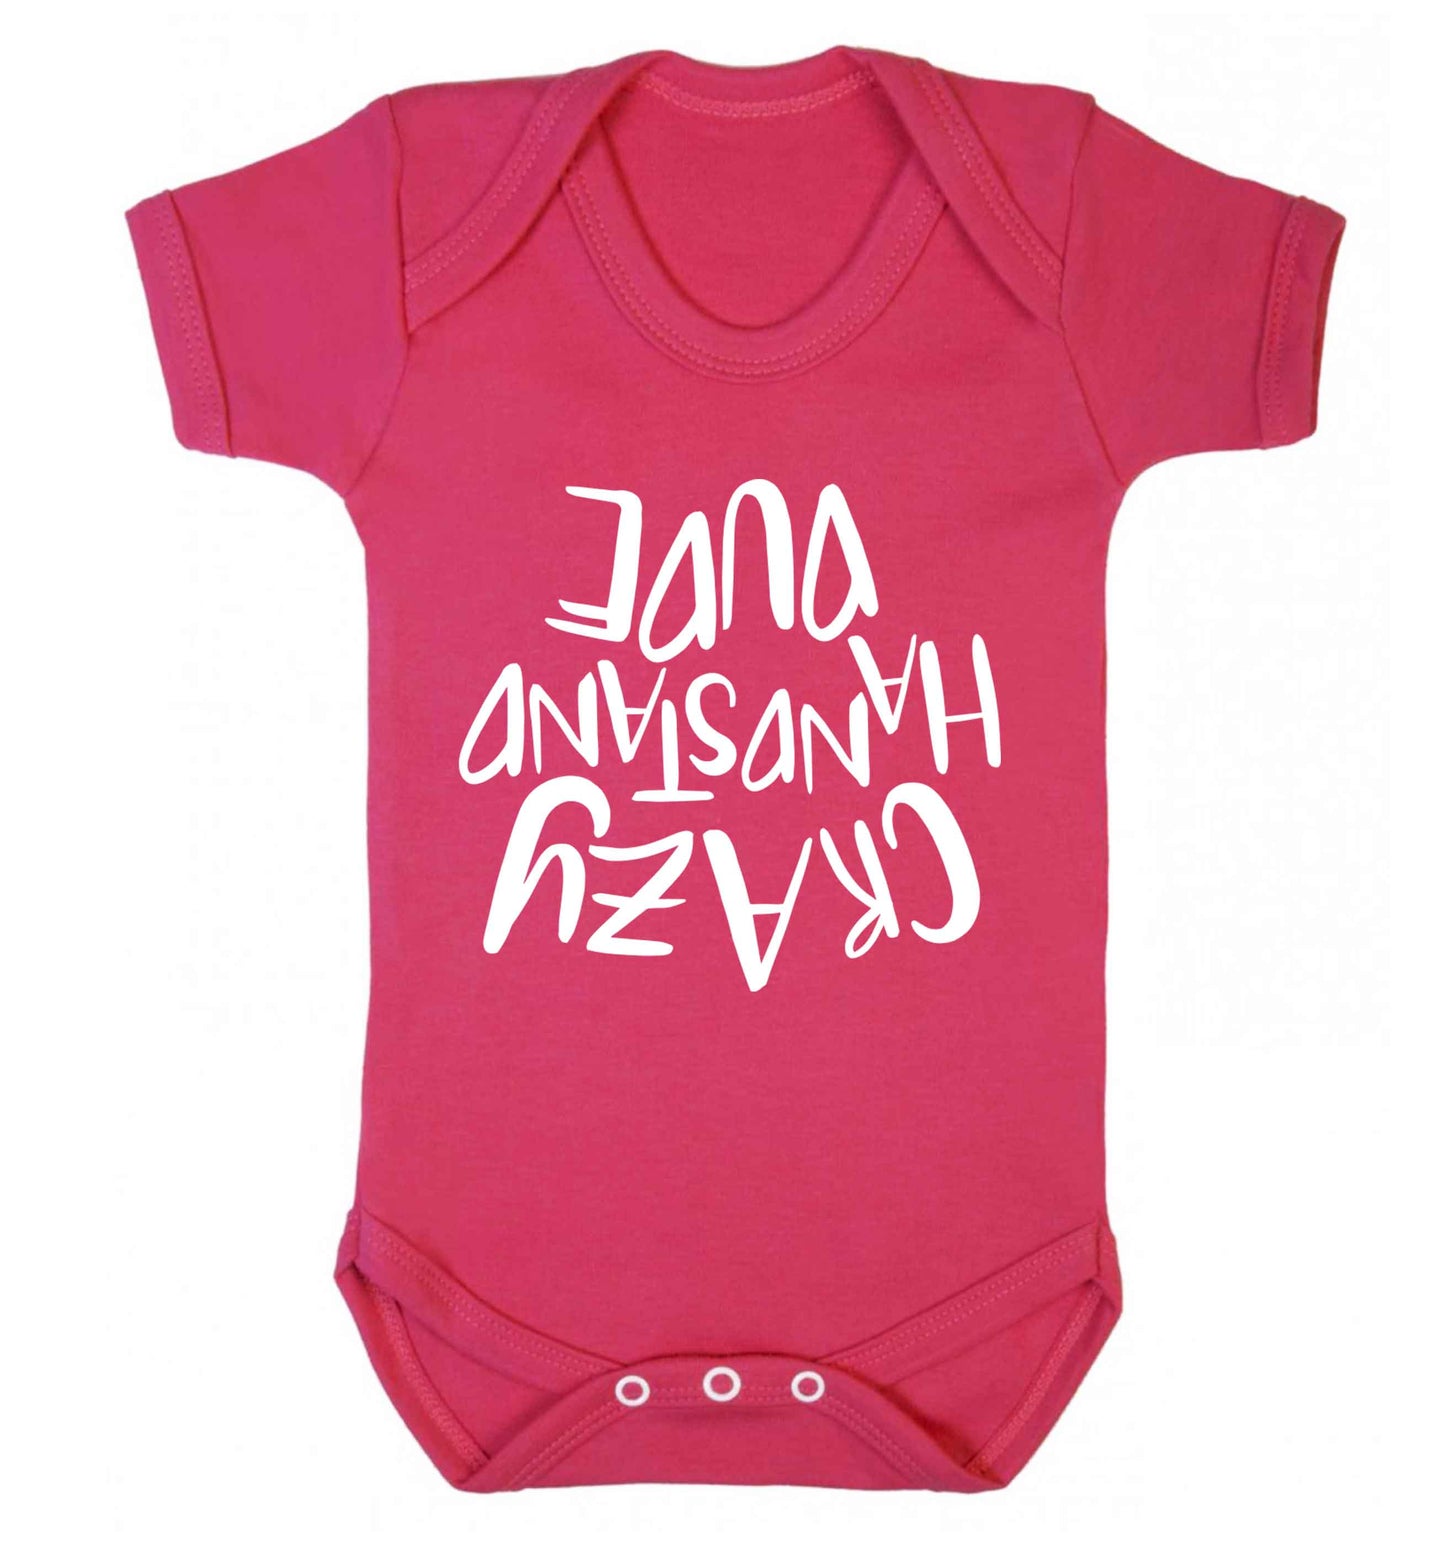 Crazy handstand dude Baby Vest dark pink 18-24 months